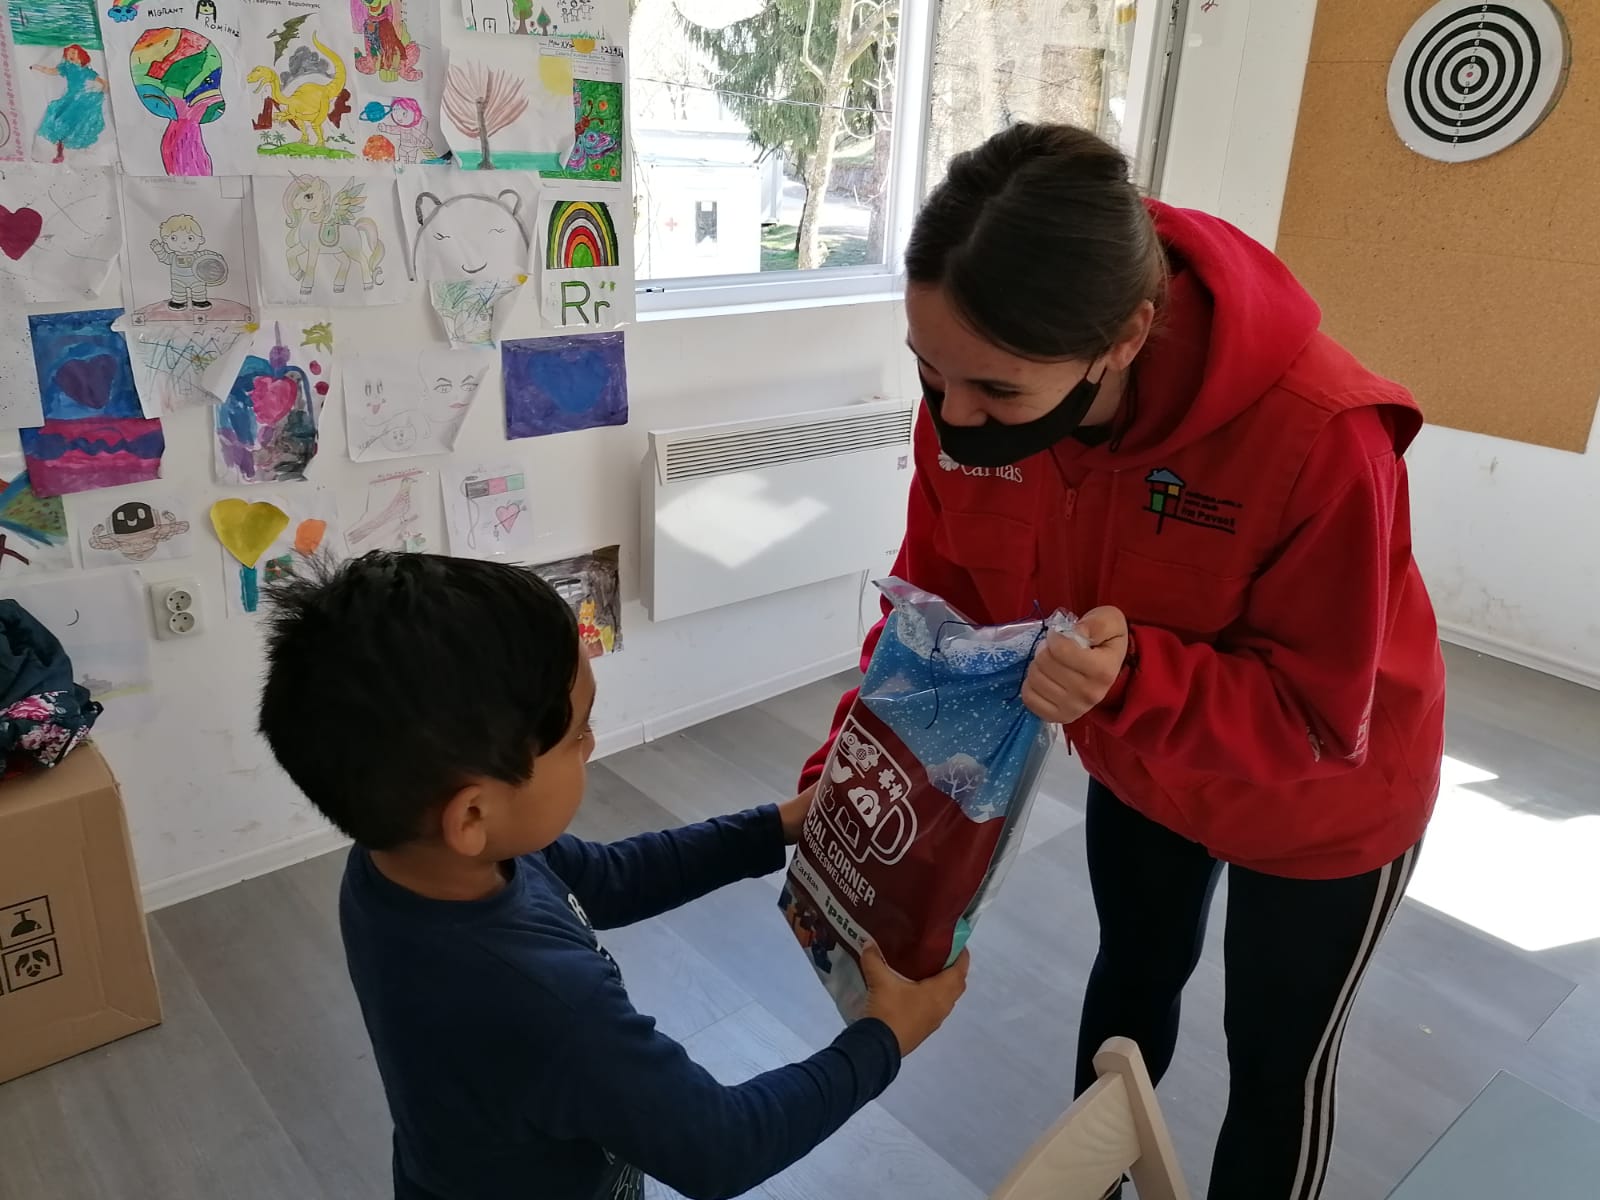 Malteserorden verteilt Nahrungsmittel an Kinder in Migrantenlagern bei Sarajevo